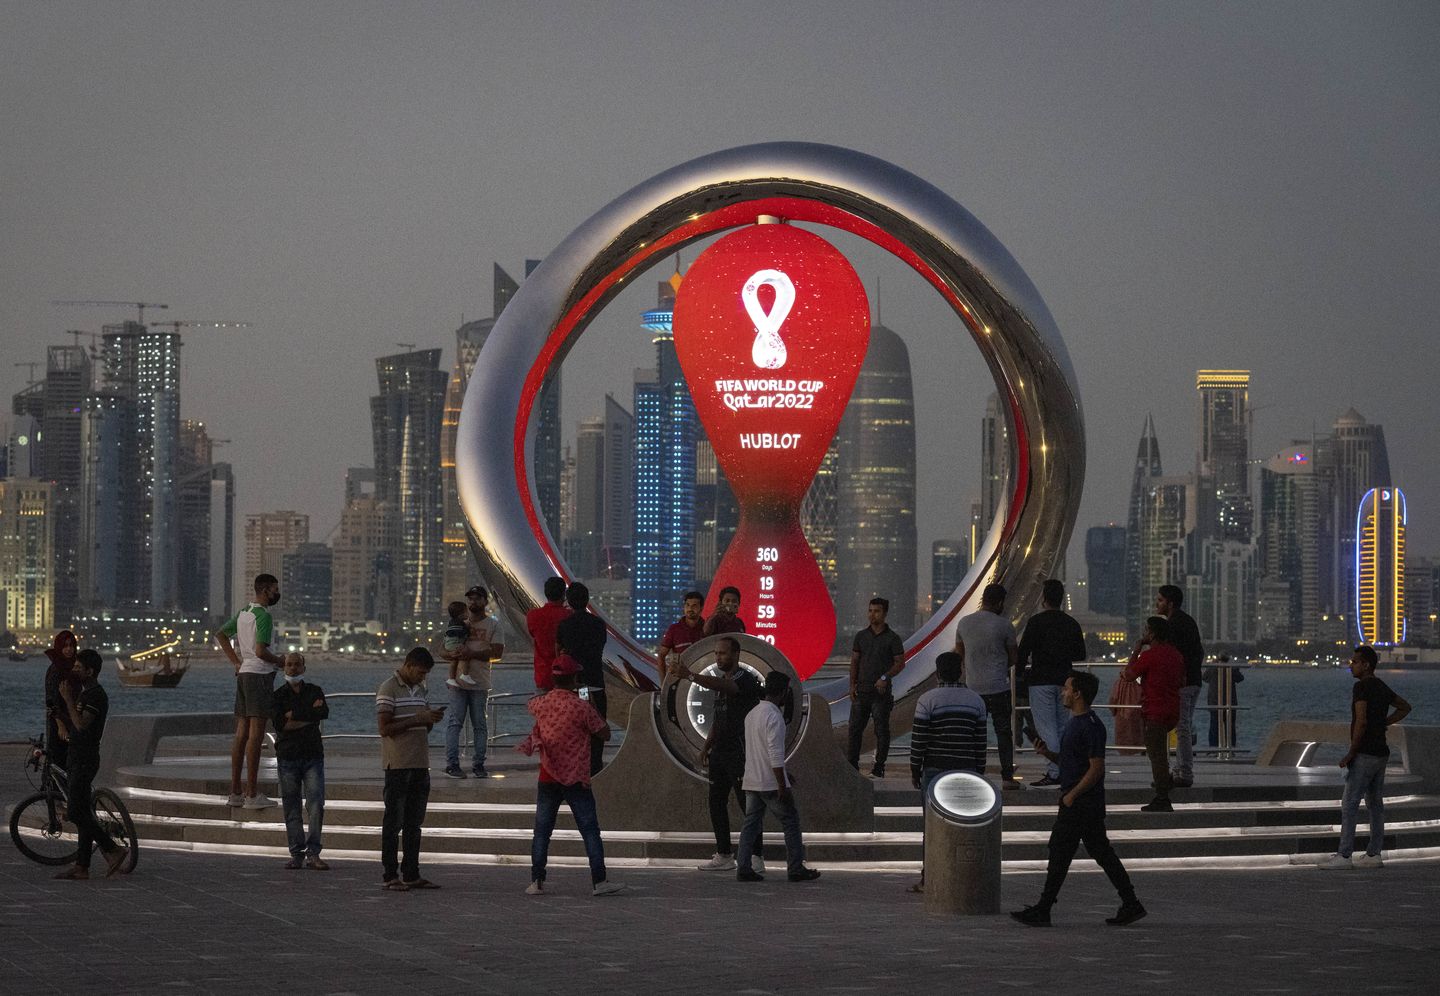 Rapora göre Katar, Dünya Kupası hava trafiği ezilmesine hazırlıksız